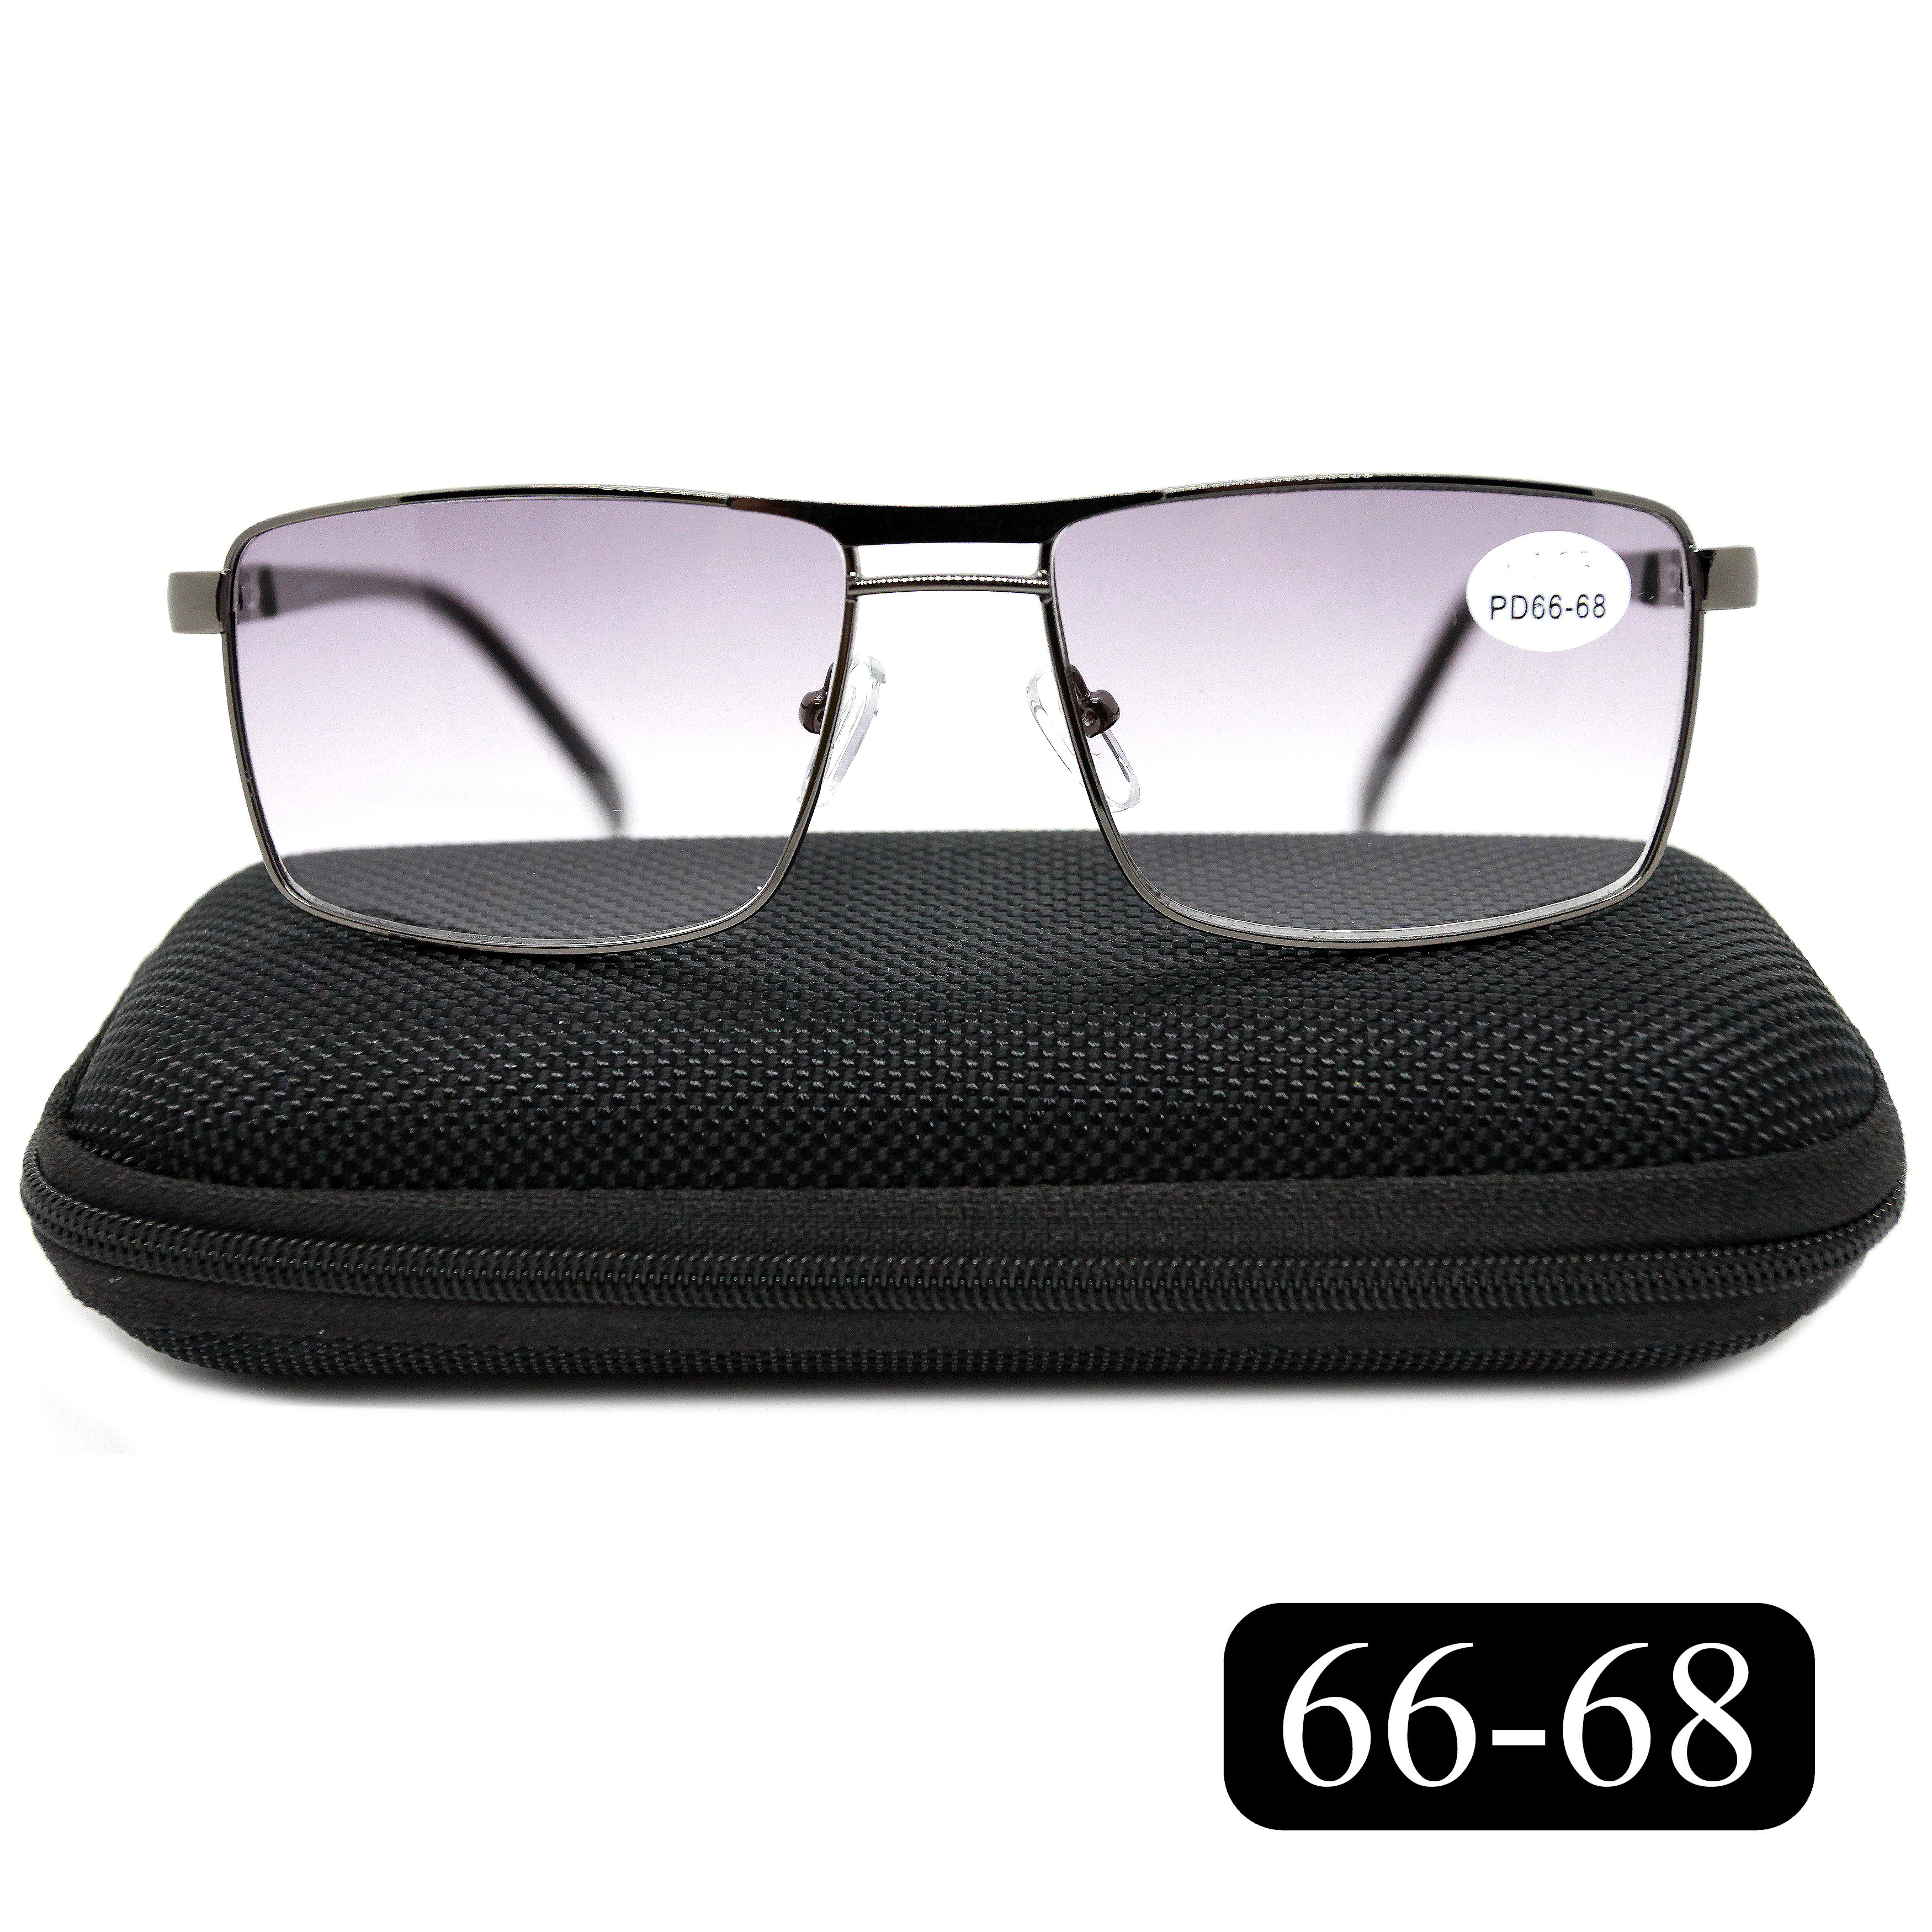 Готовые очки Salivio 5009 +3,00, c футляром, с тонировкой, черный, РЦ 66-68